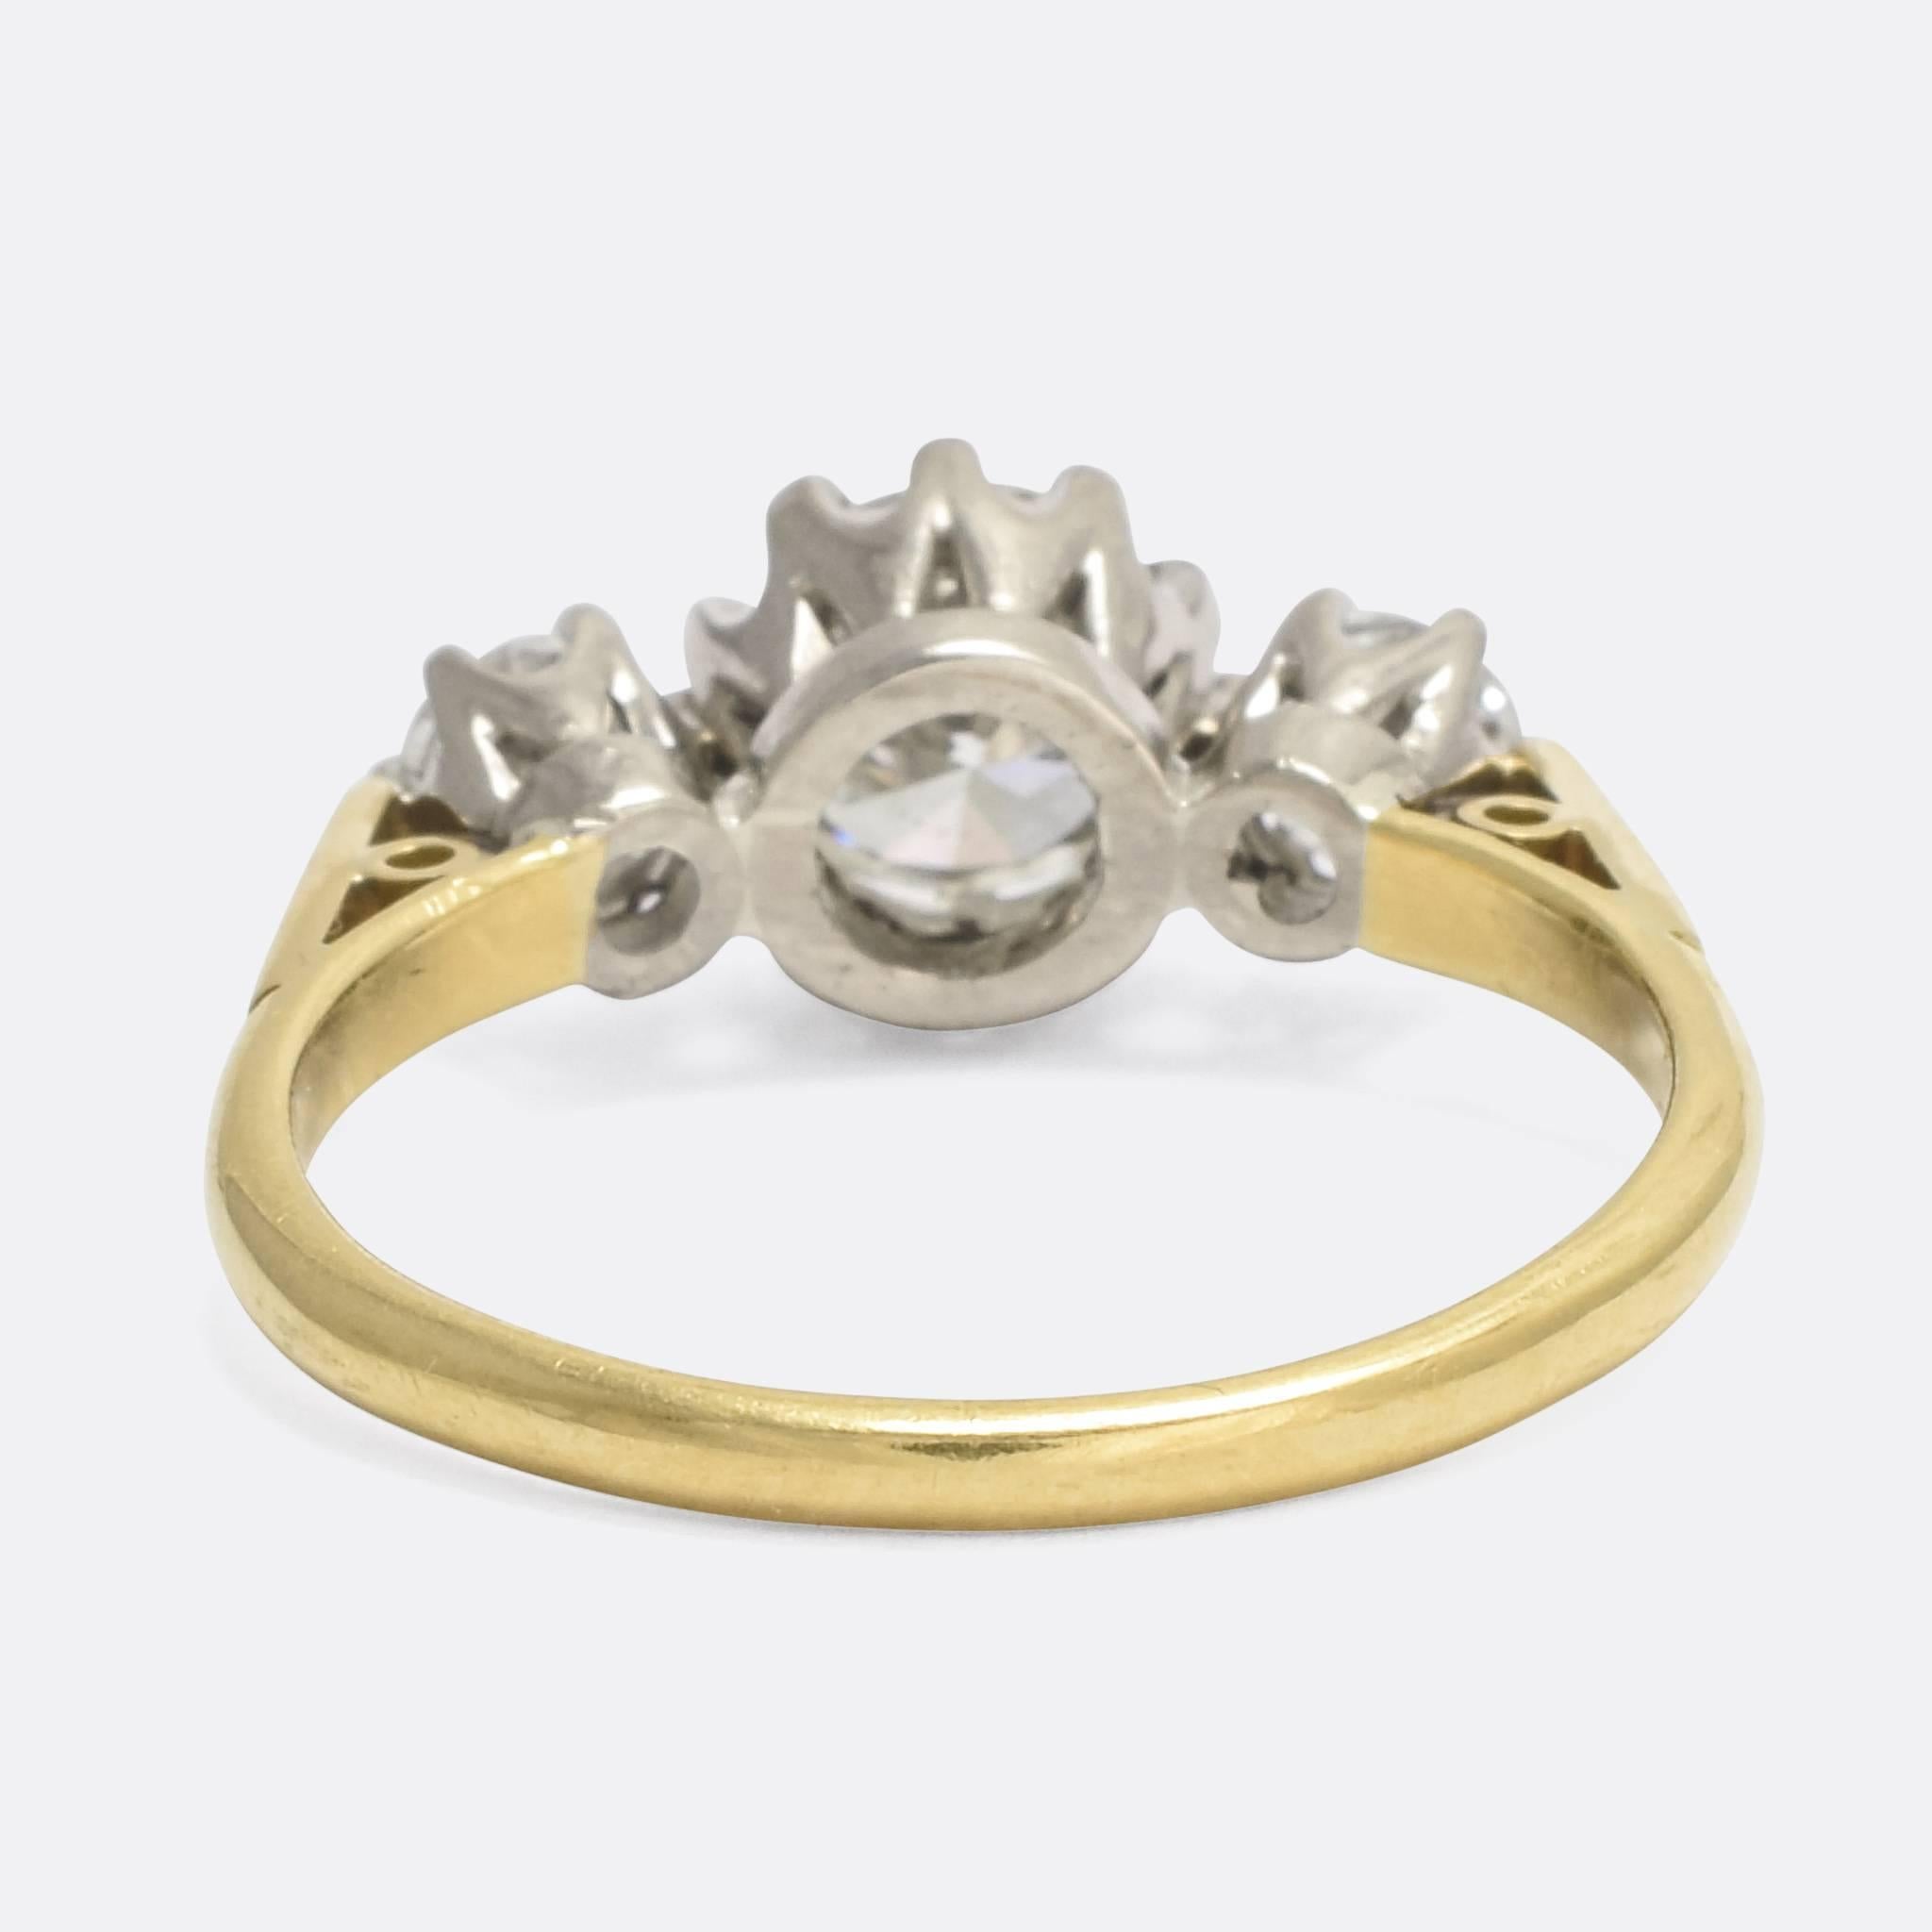 1.5 carat trilogy diamond ring